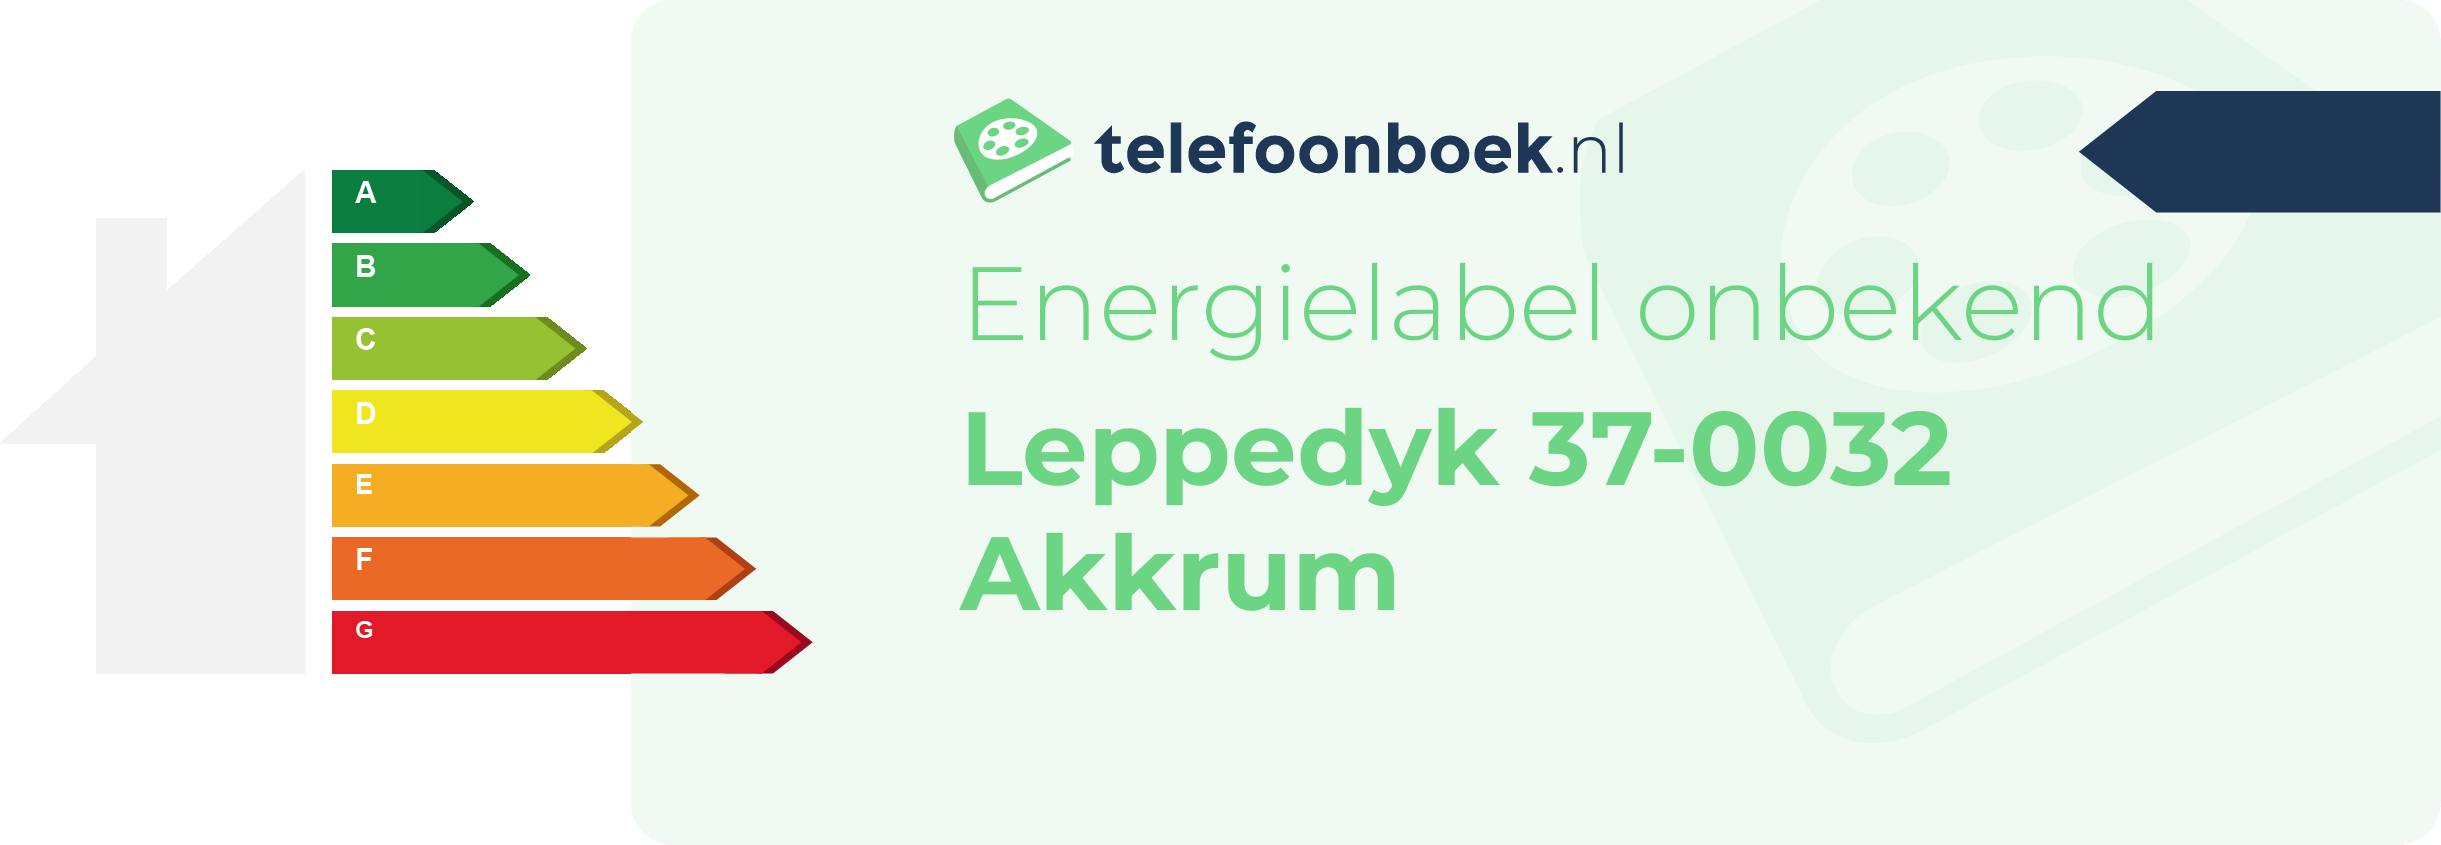 Energielabel Leppedyk 37-0032 Akkrum